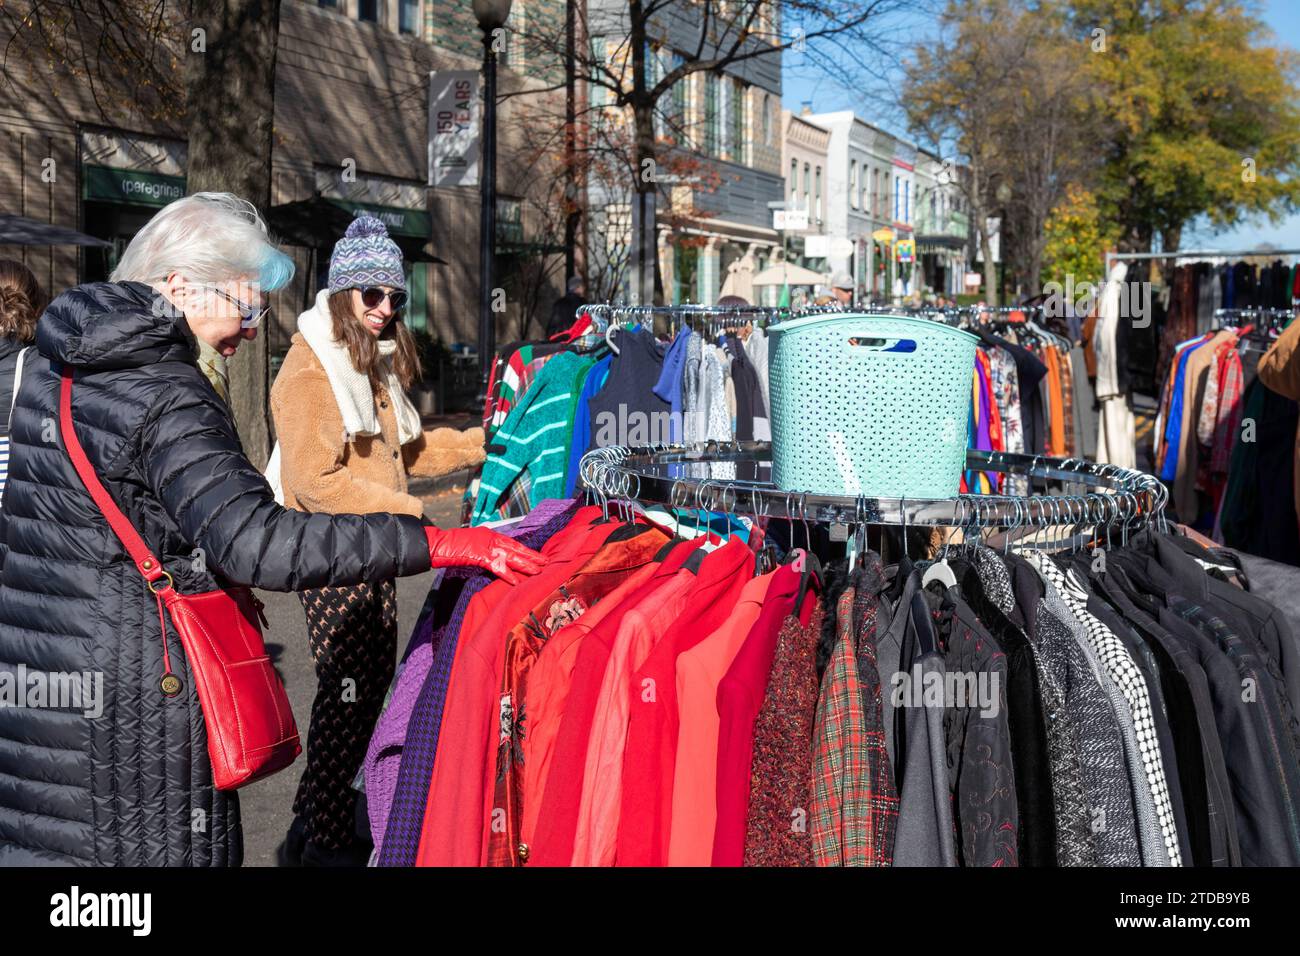 Washington, DC - Compradores de ropa en el mercado al aire libre semanal en el mercado oriental en Capitol Hill. Foto de stock